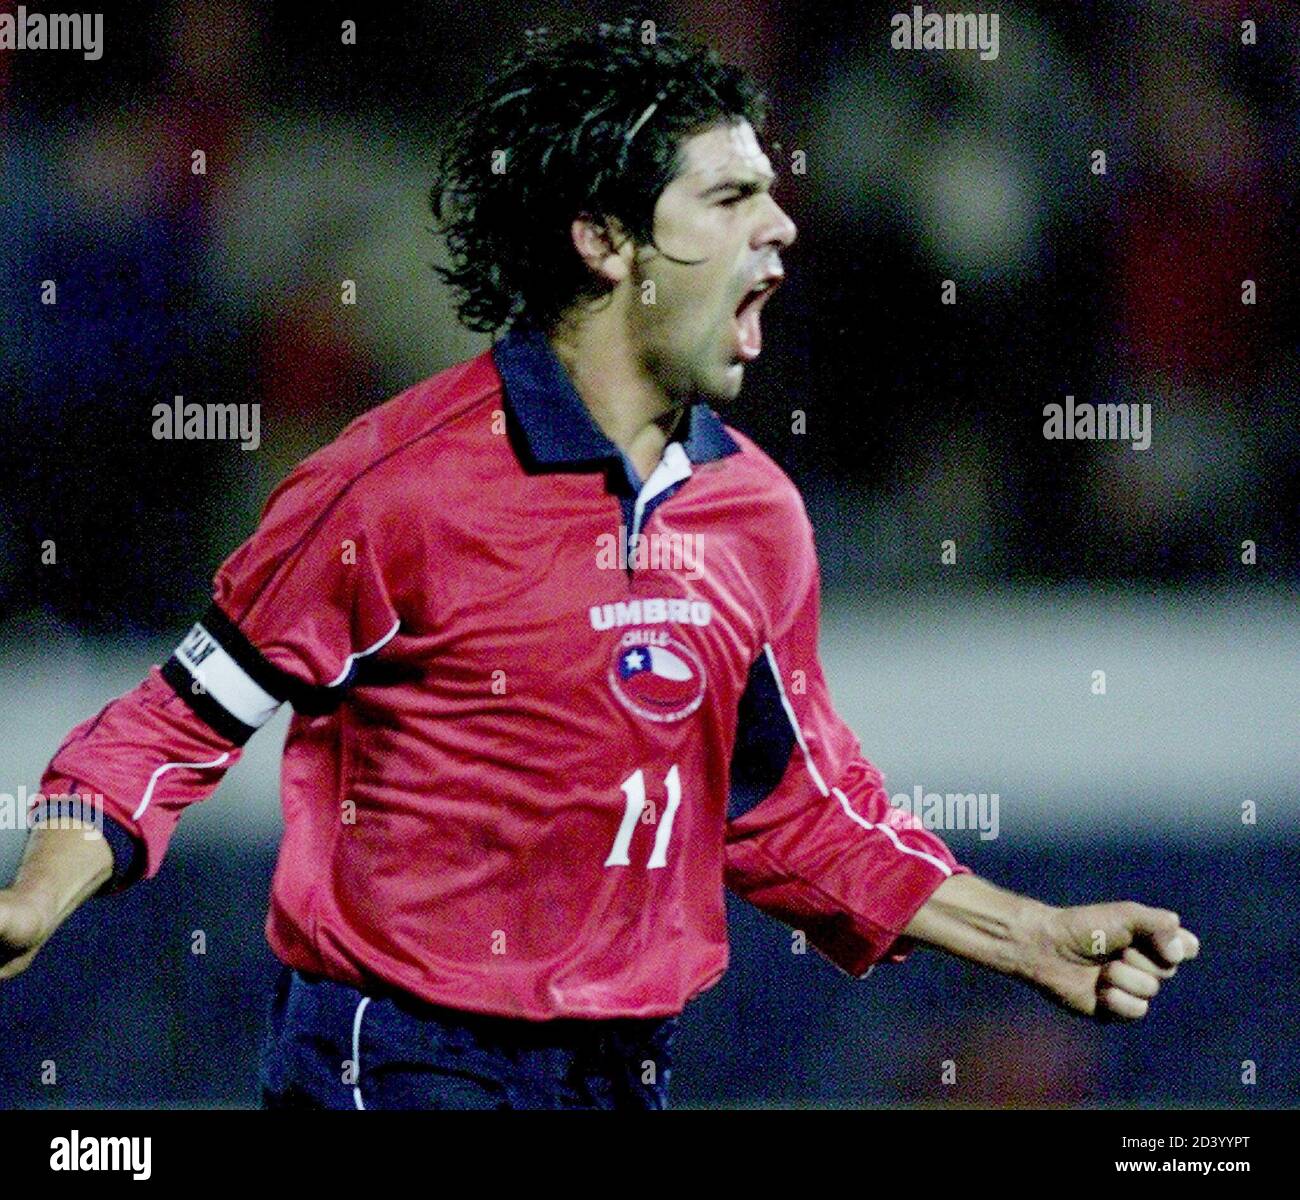 la-estrella-chilena-del-futbol-marcelo-salas-celebra-su-primer-gol-contra-bolivia-durante-su-encuentro-de-clasificacion-corea-japon-2002-en-el-estadio-nacional-de-santiago-el-14-de-agosto-de-2001-mb-me-2d3yypt.jpg